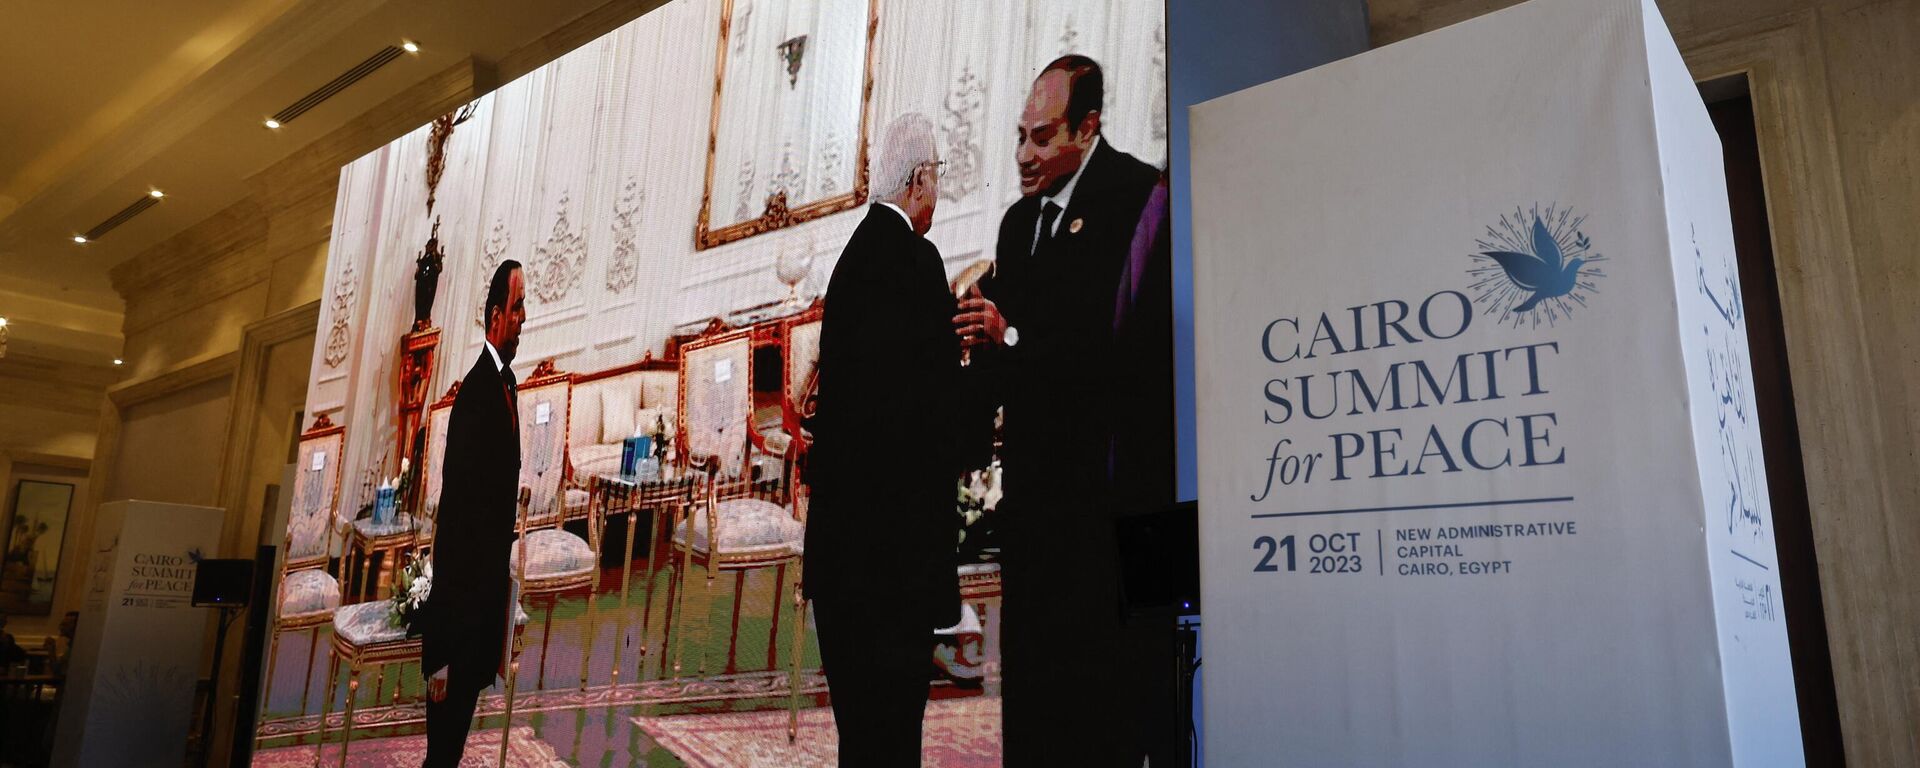 Sommet pour la paix au Caire, le 21 octobre 2023 - Sputnik Afrique, 1920, 21.10.2023